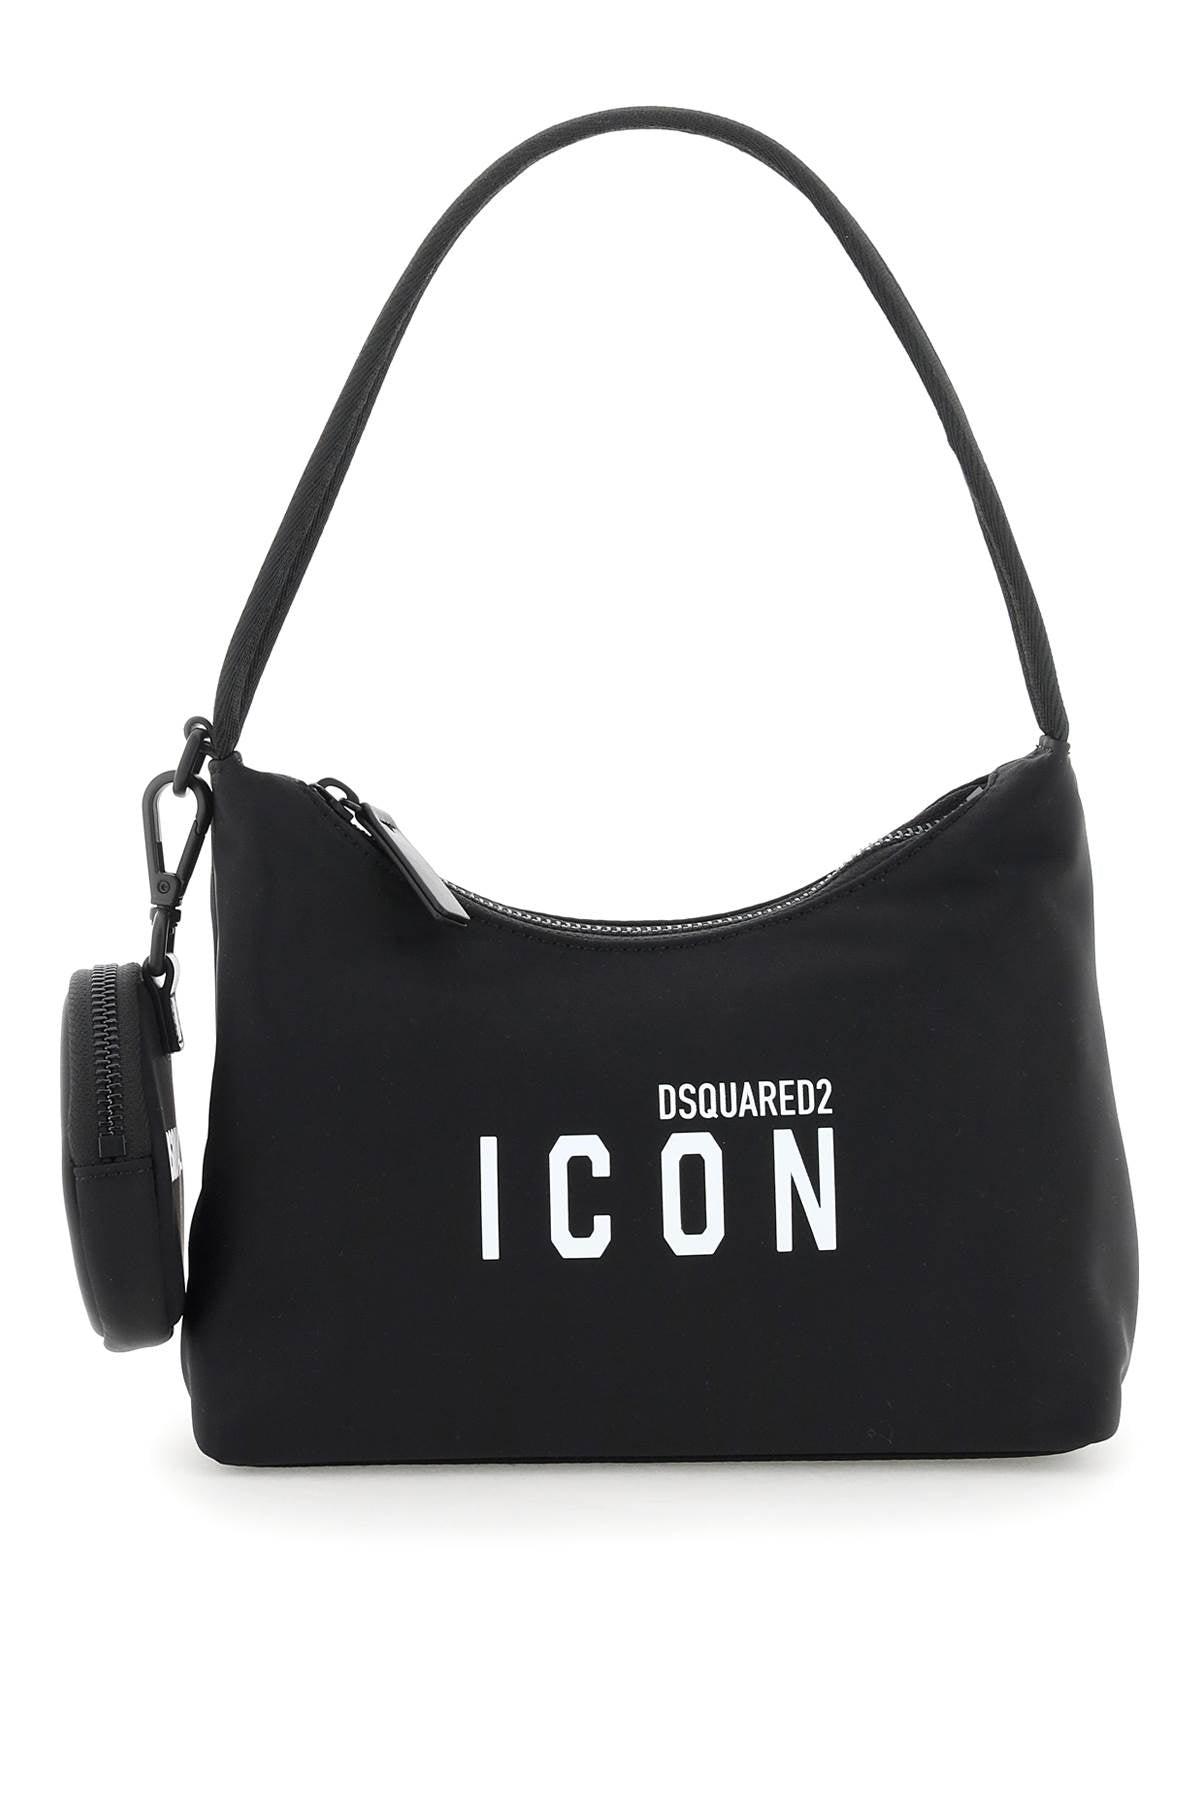 DSquared² \'icon\' Shoulder Bag in Black | Lyst